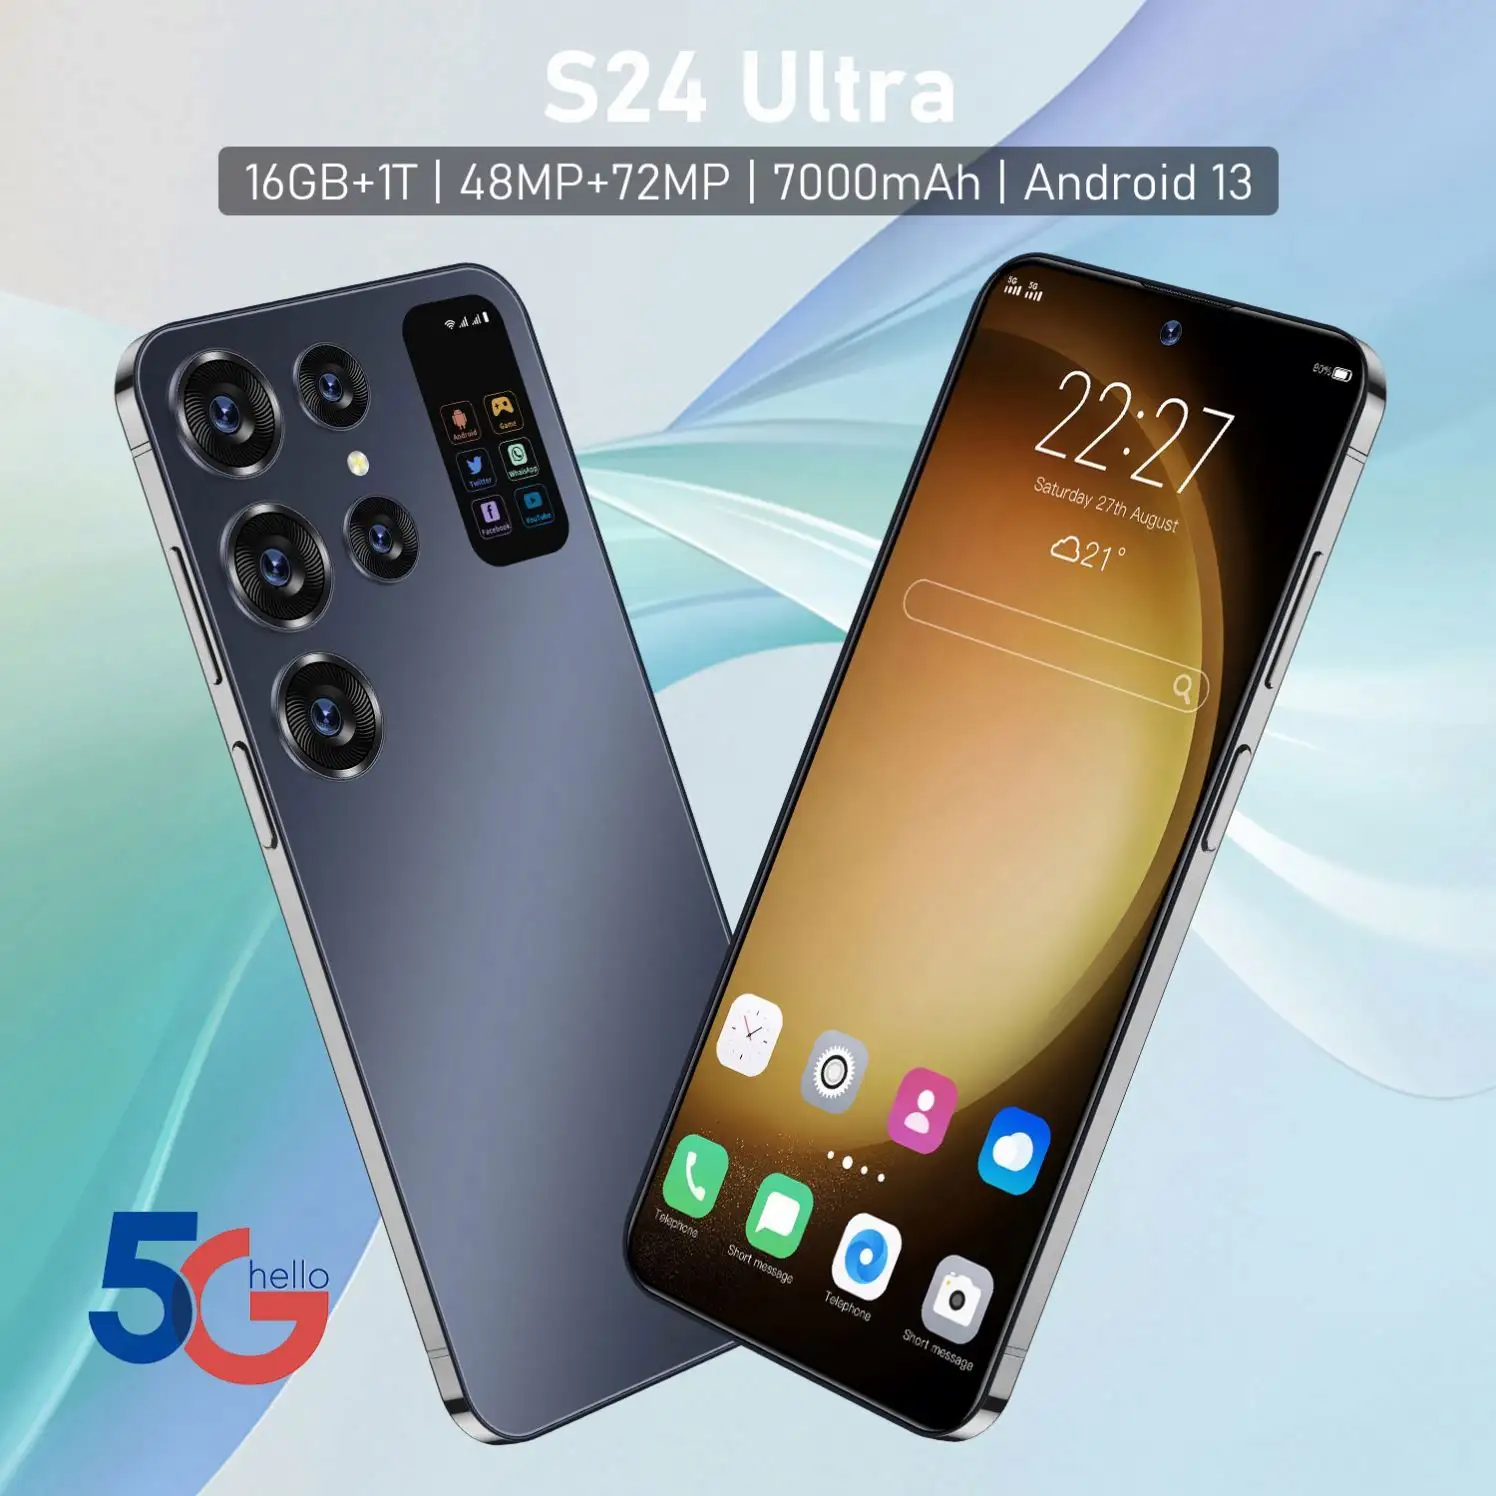 Özel orijinal S24 kilidini cep telefonları akıllı telefonlar android çift sim kart marka ucuz toptan hücresel toplu akıllı telefonlar